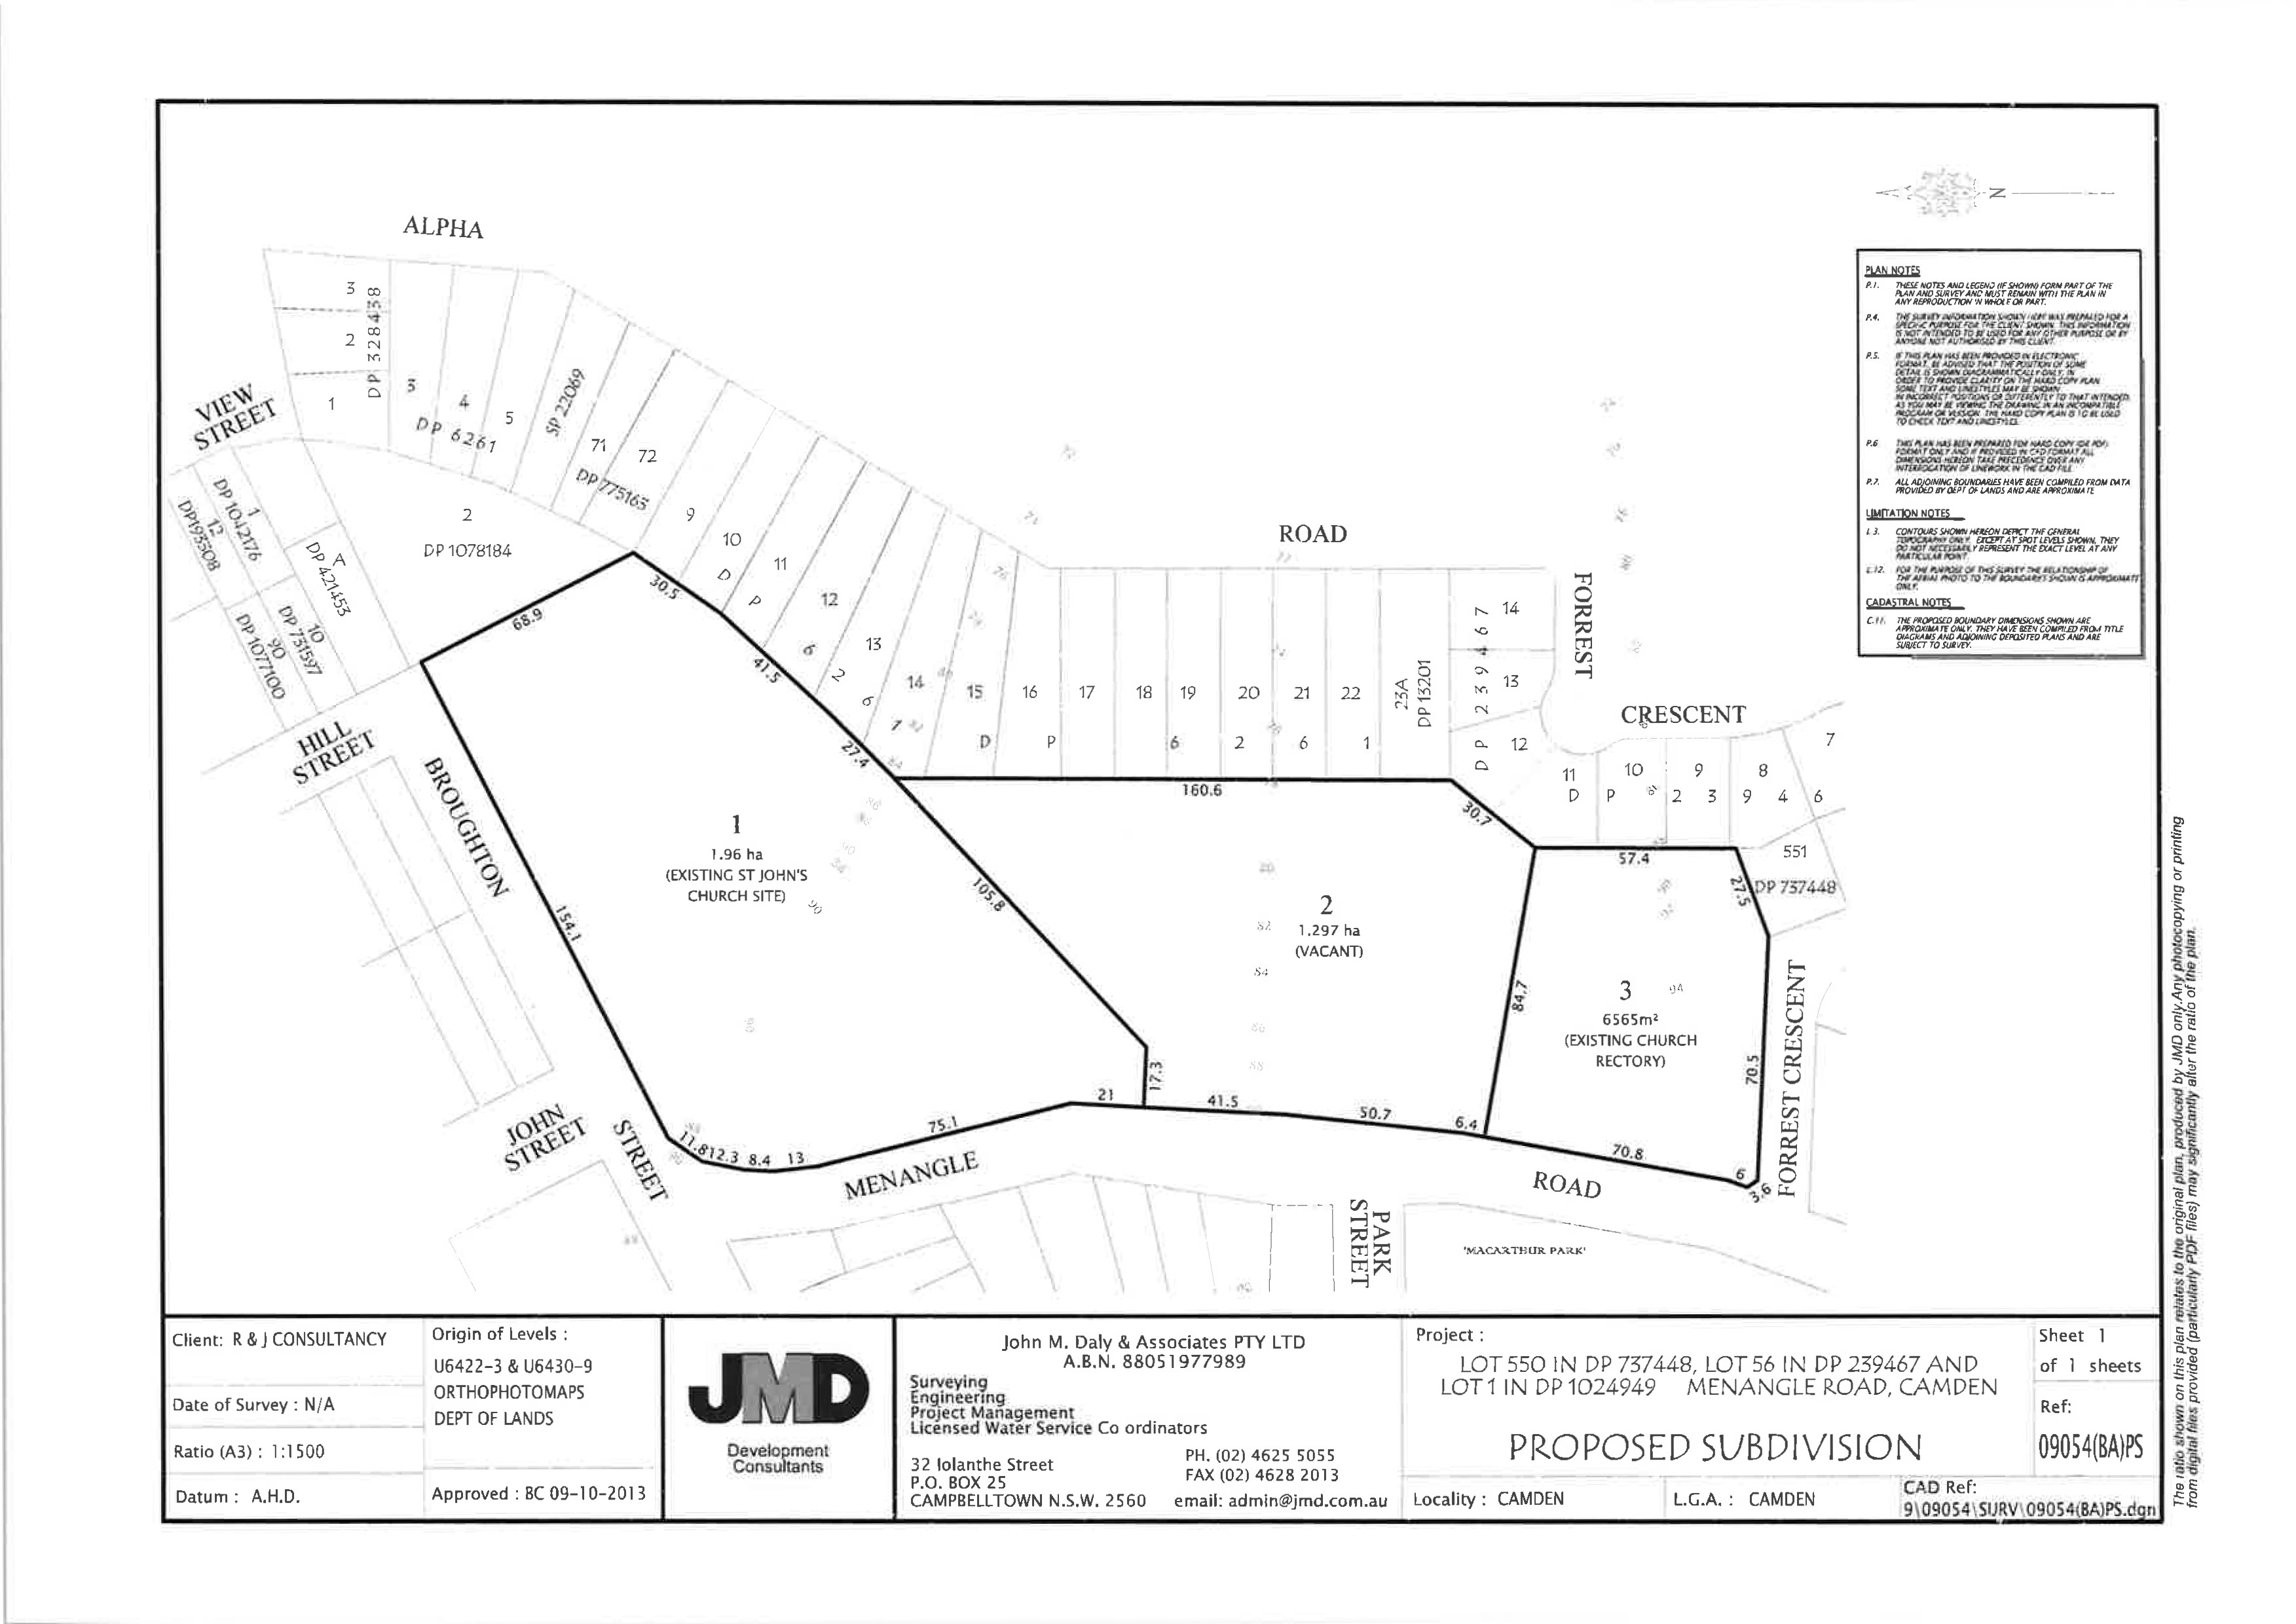 Proposed subdivision